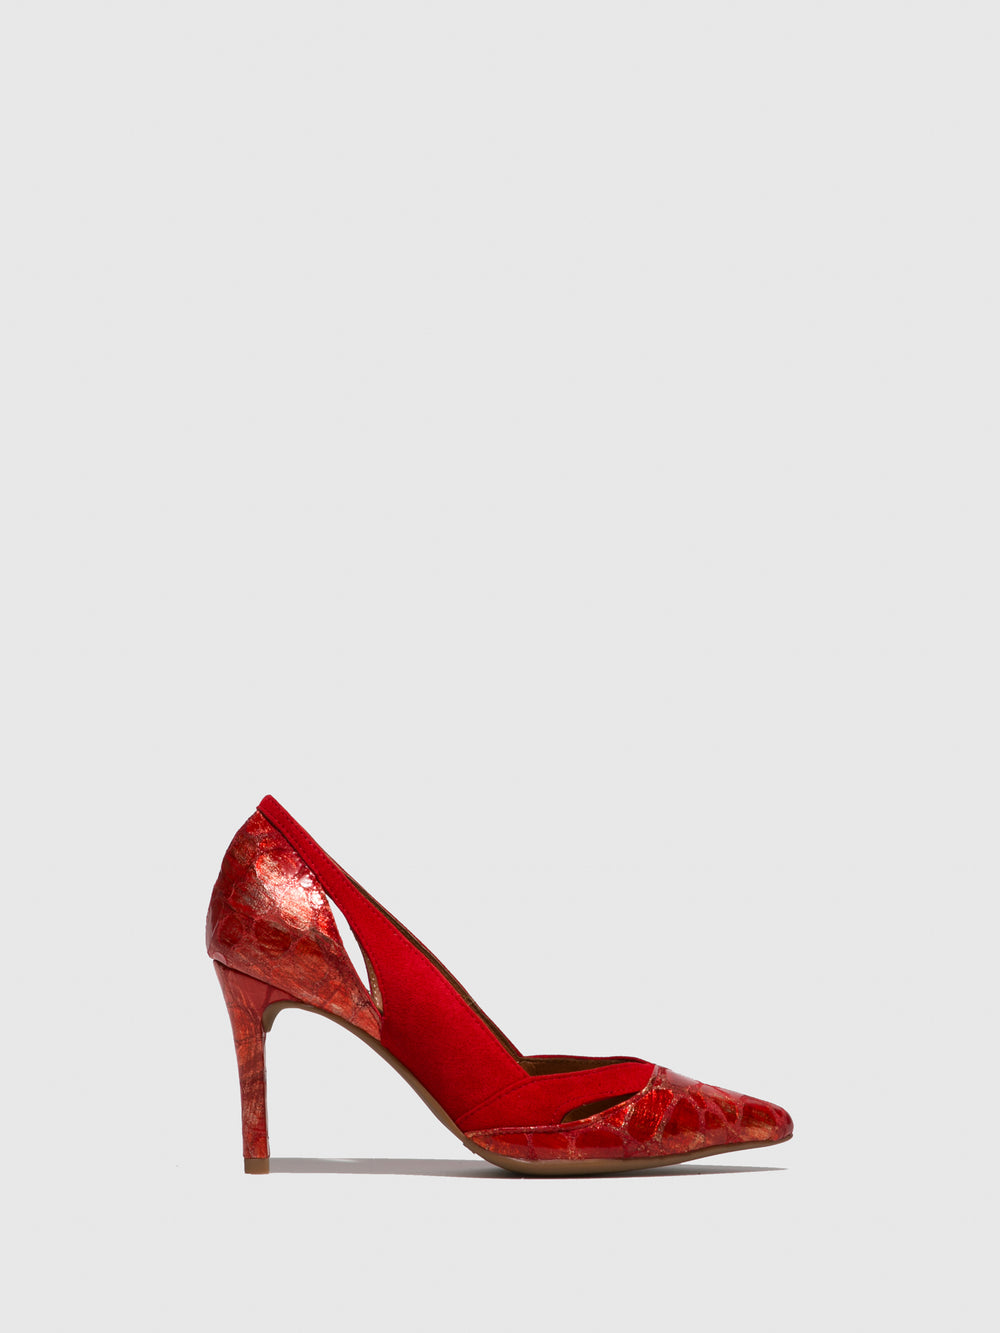 Sapatos Stilettos em Vermelho